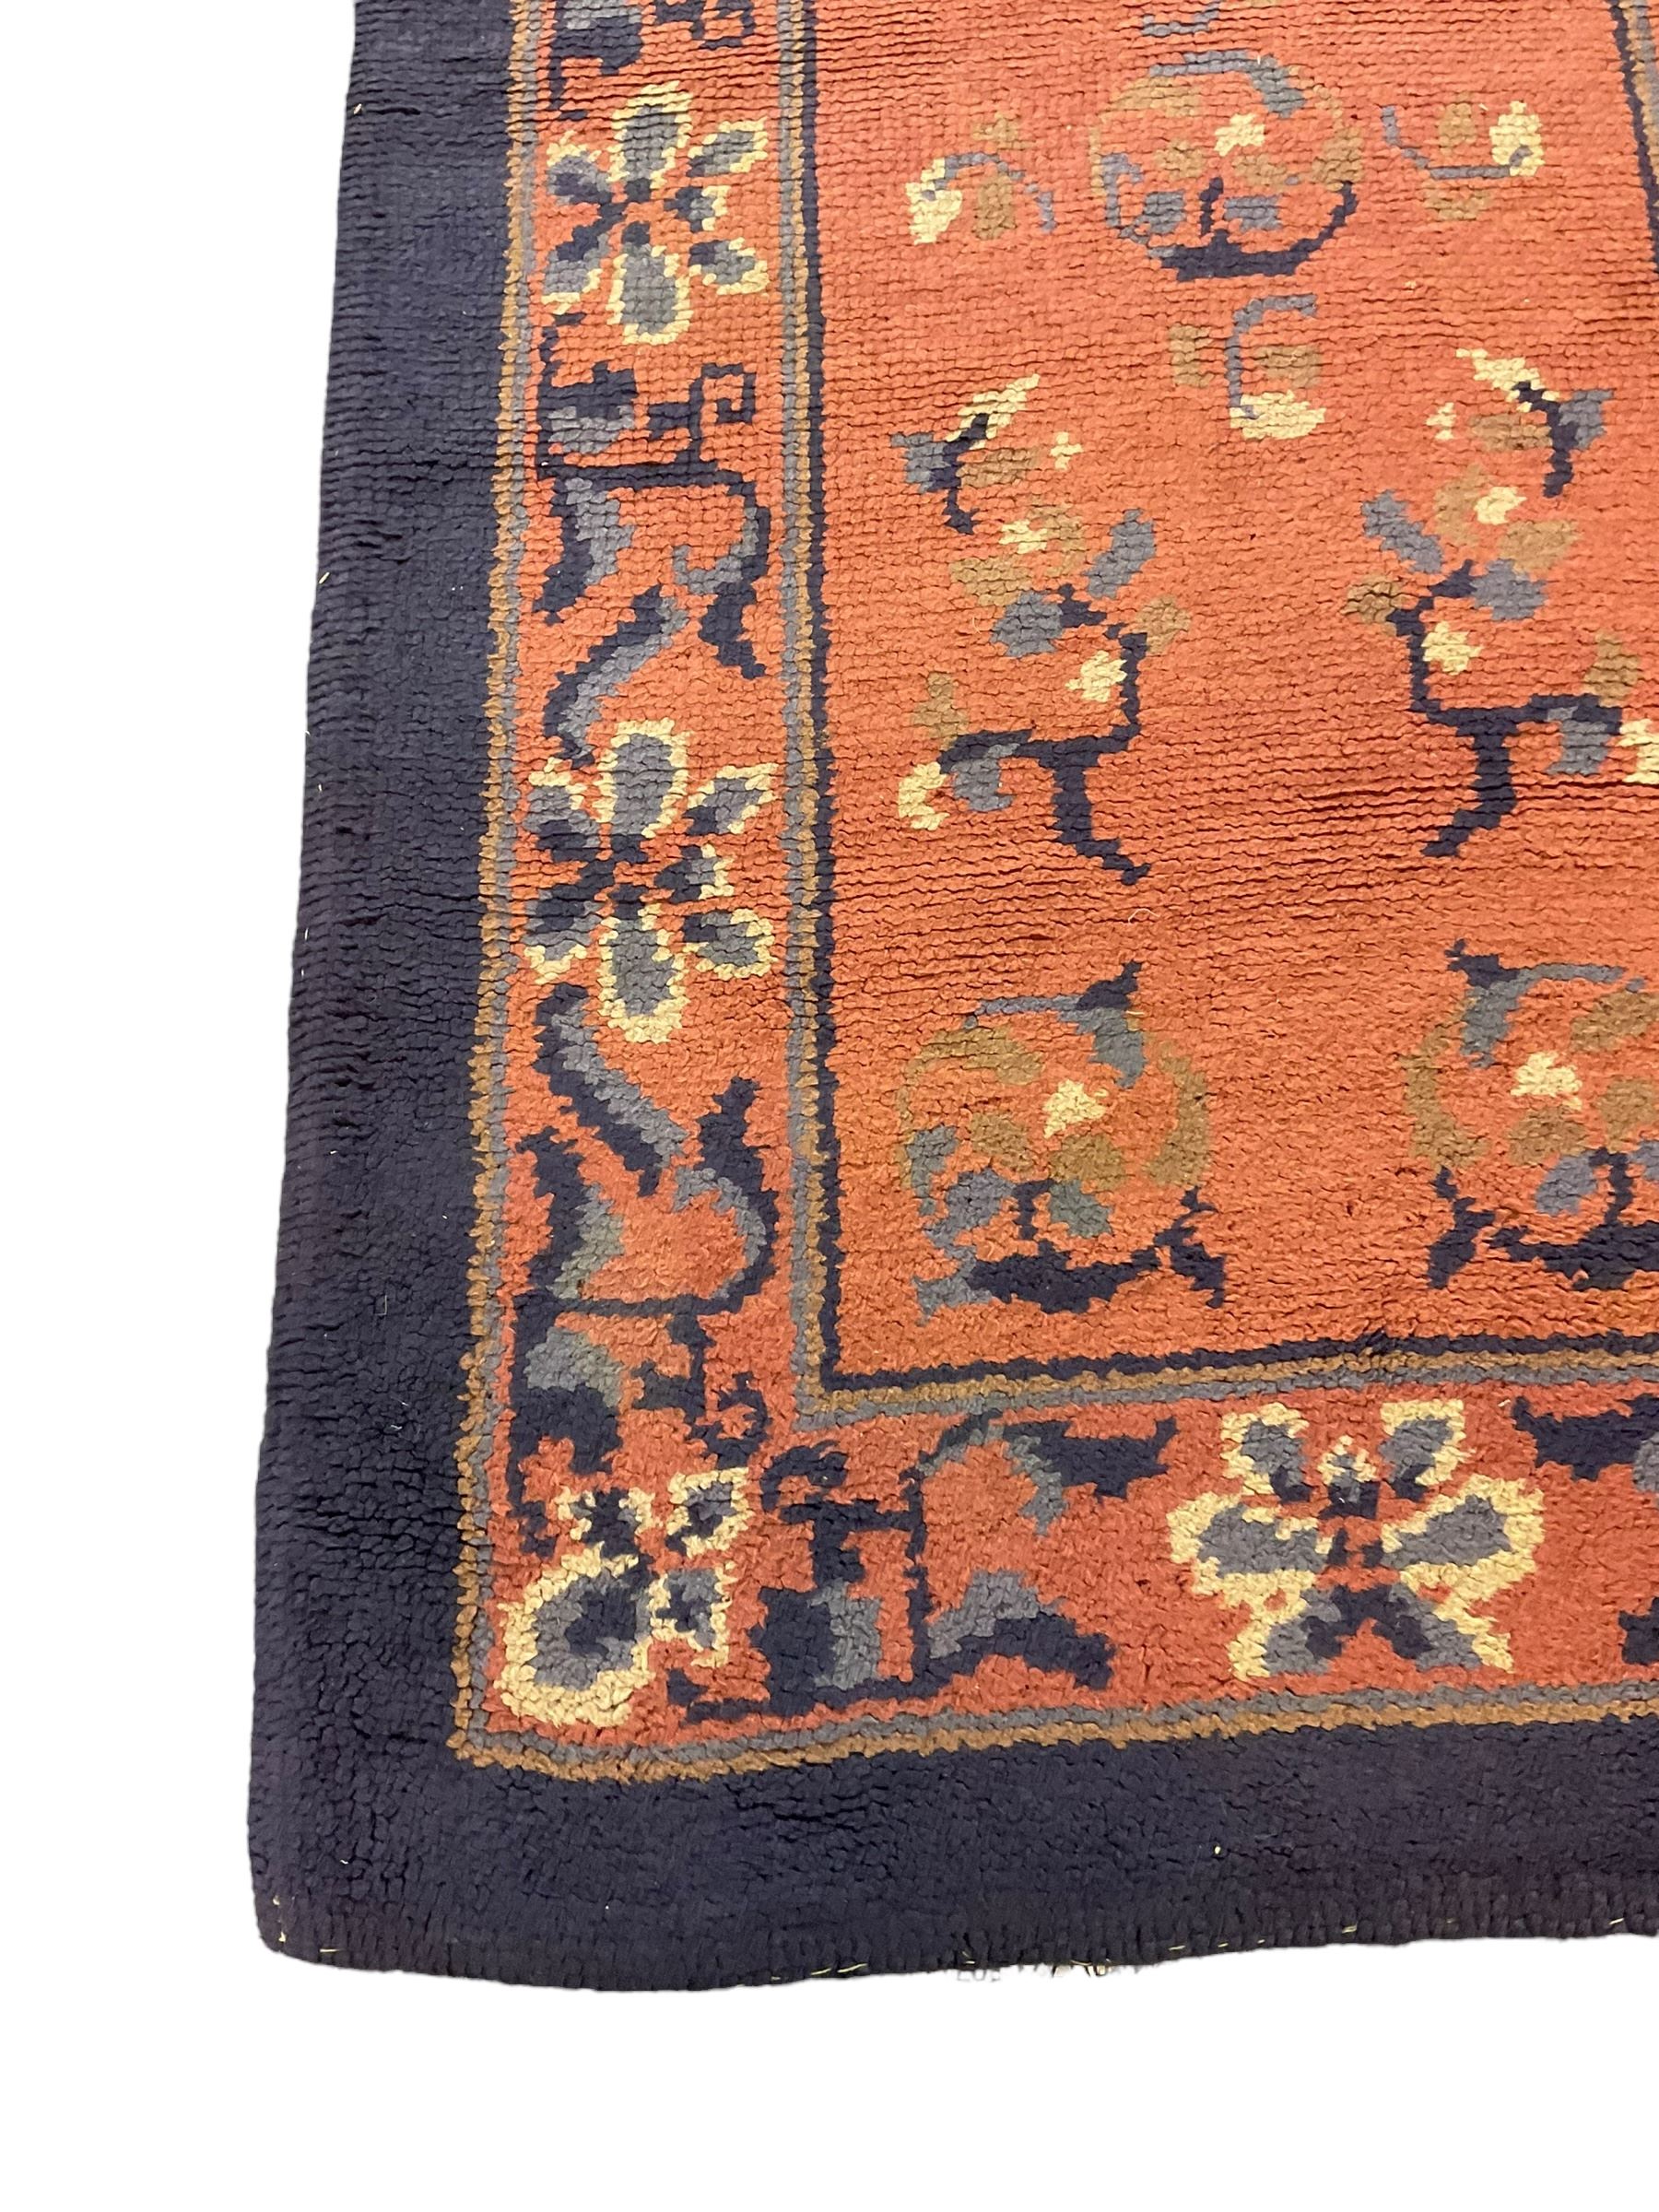 Persian design peach ground rug (169cm x 117cm); Chinese peach ground rug (187cm x 101cm) - Image 2 of 9